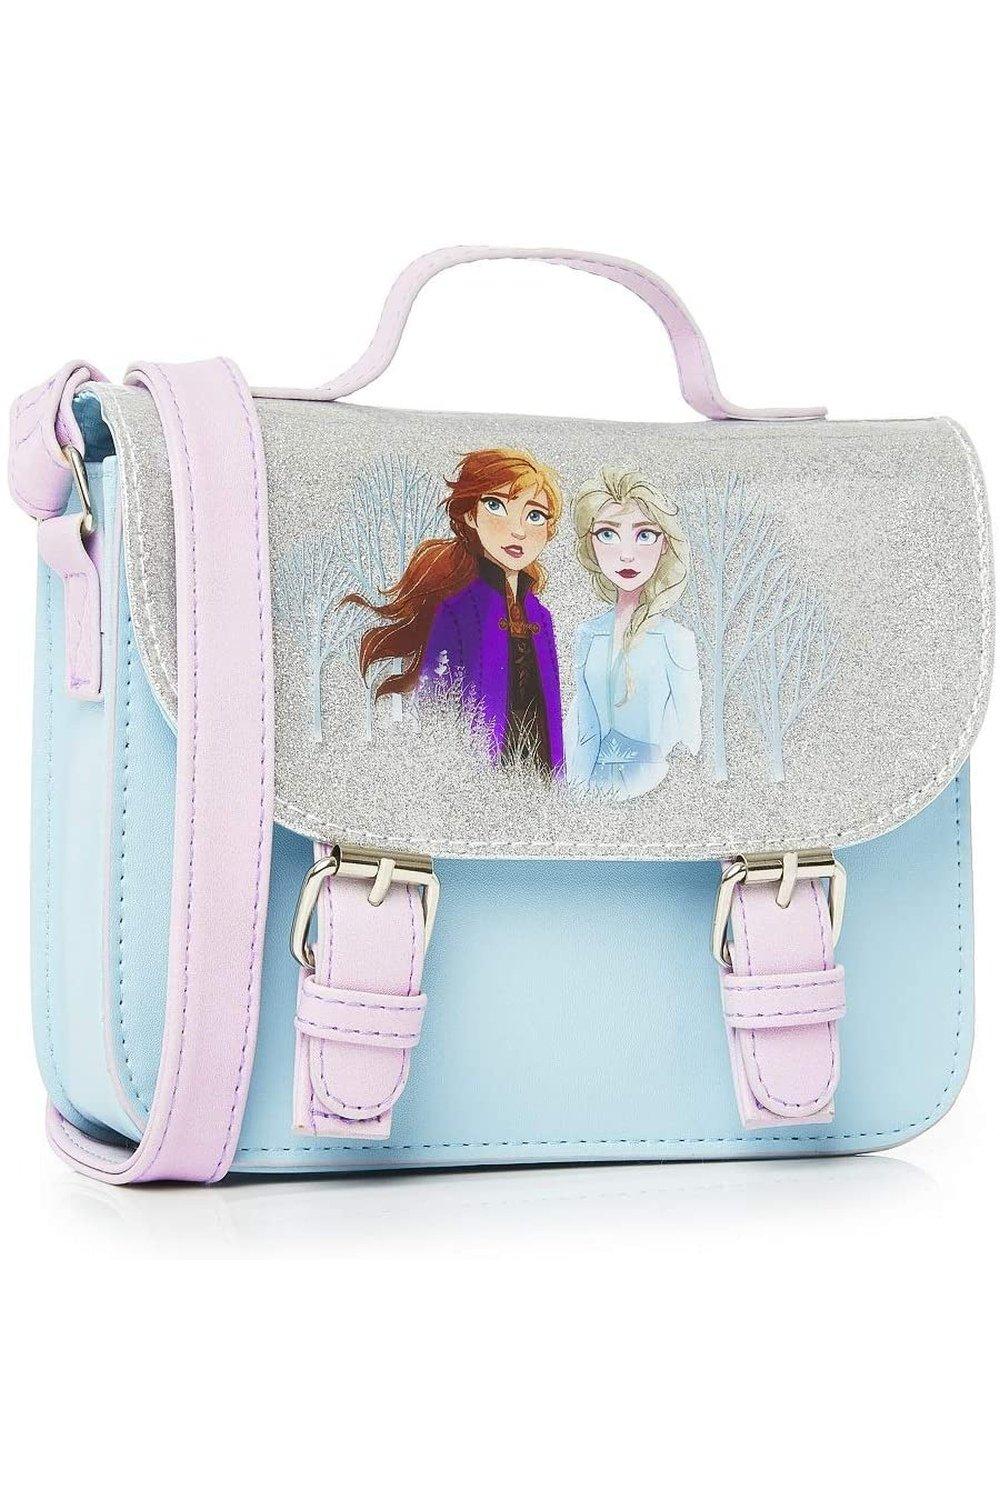 Сумка-ранец Disney Frozen, мультиколор disney 2021 модная детская сумка с микки маусом сумка для мальчиков и девочек на одно плечо диагональная сумка женская сумка для боулинга с мик